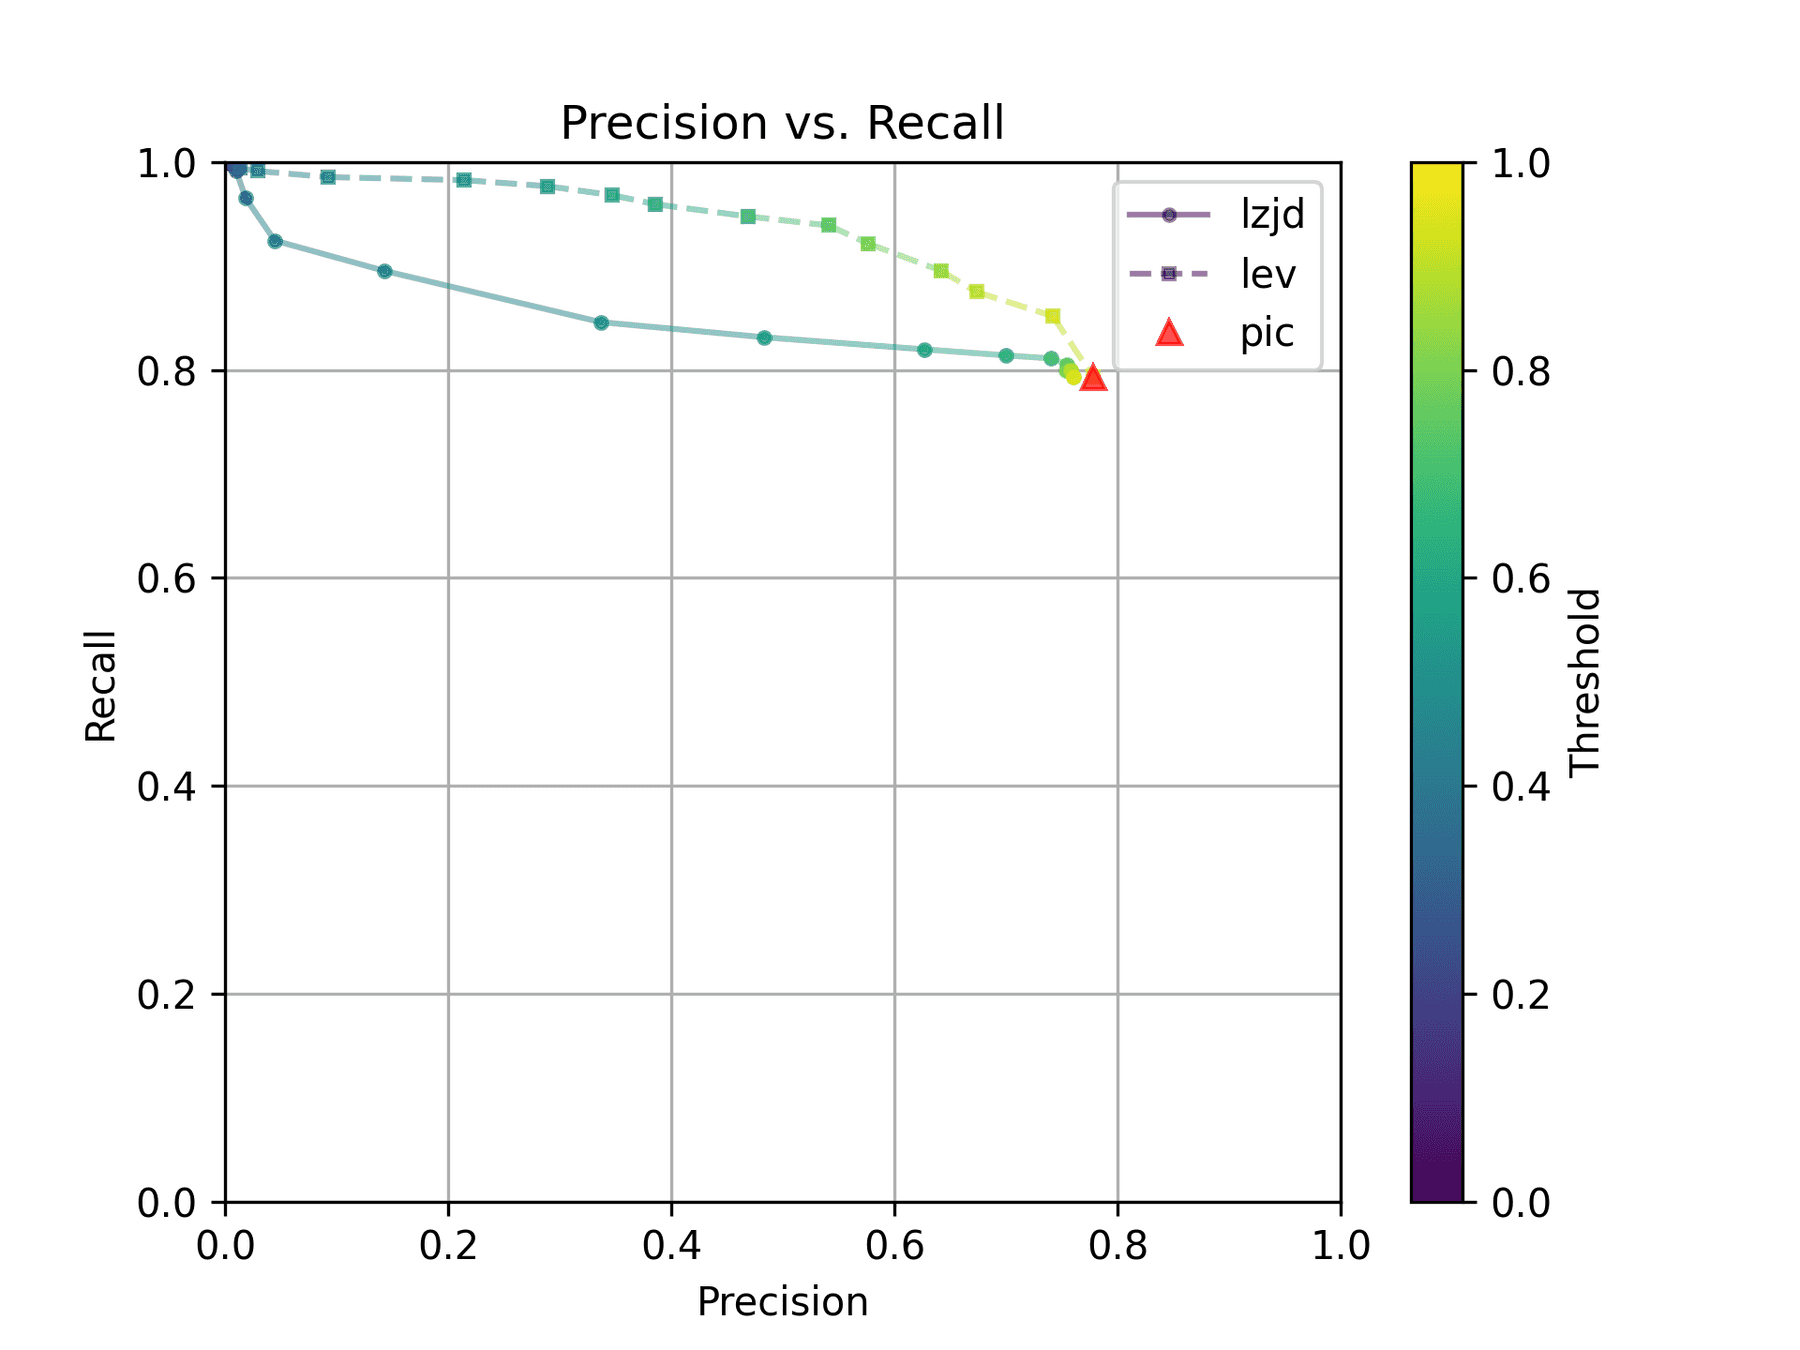 Precision vs. Recall plot for "openssl -O2 vs -O3"